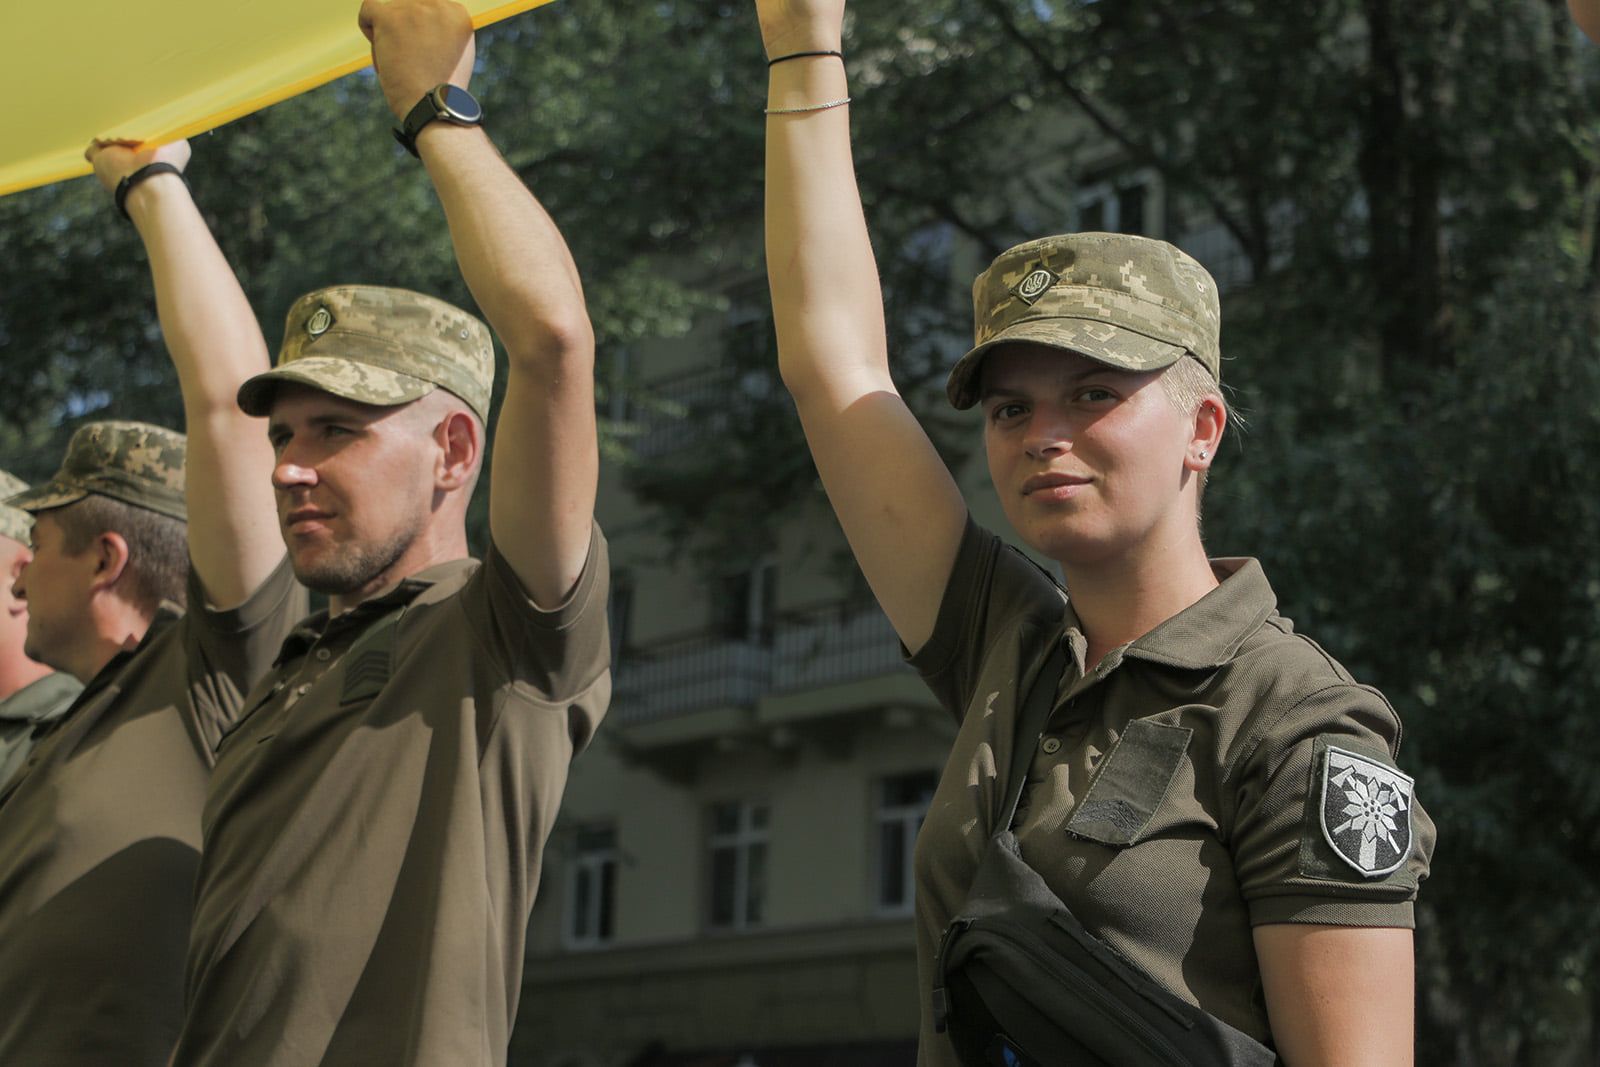 День захисника України перейменовано з врахуванням гендерної політики